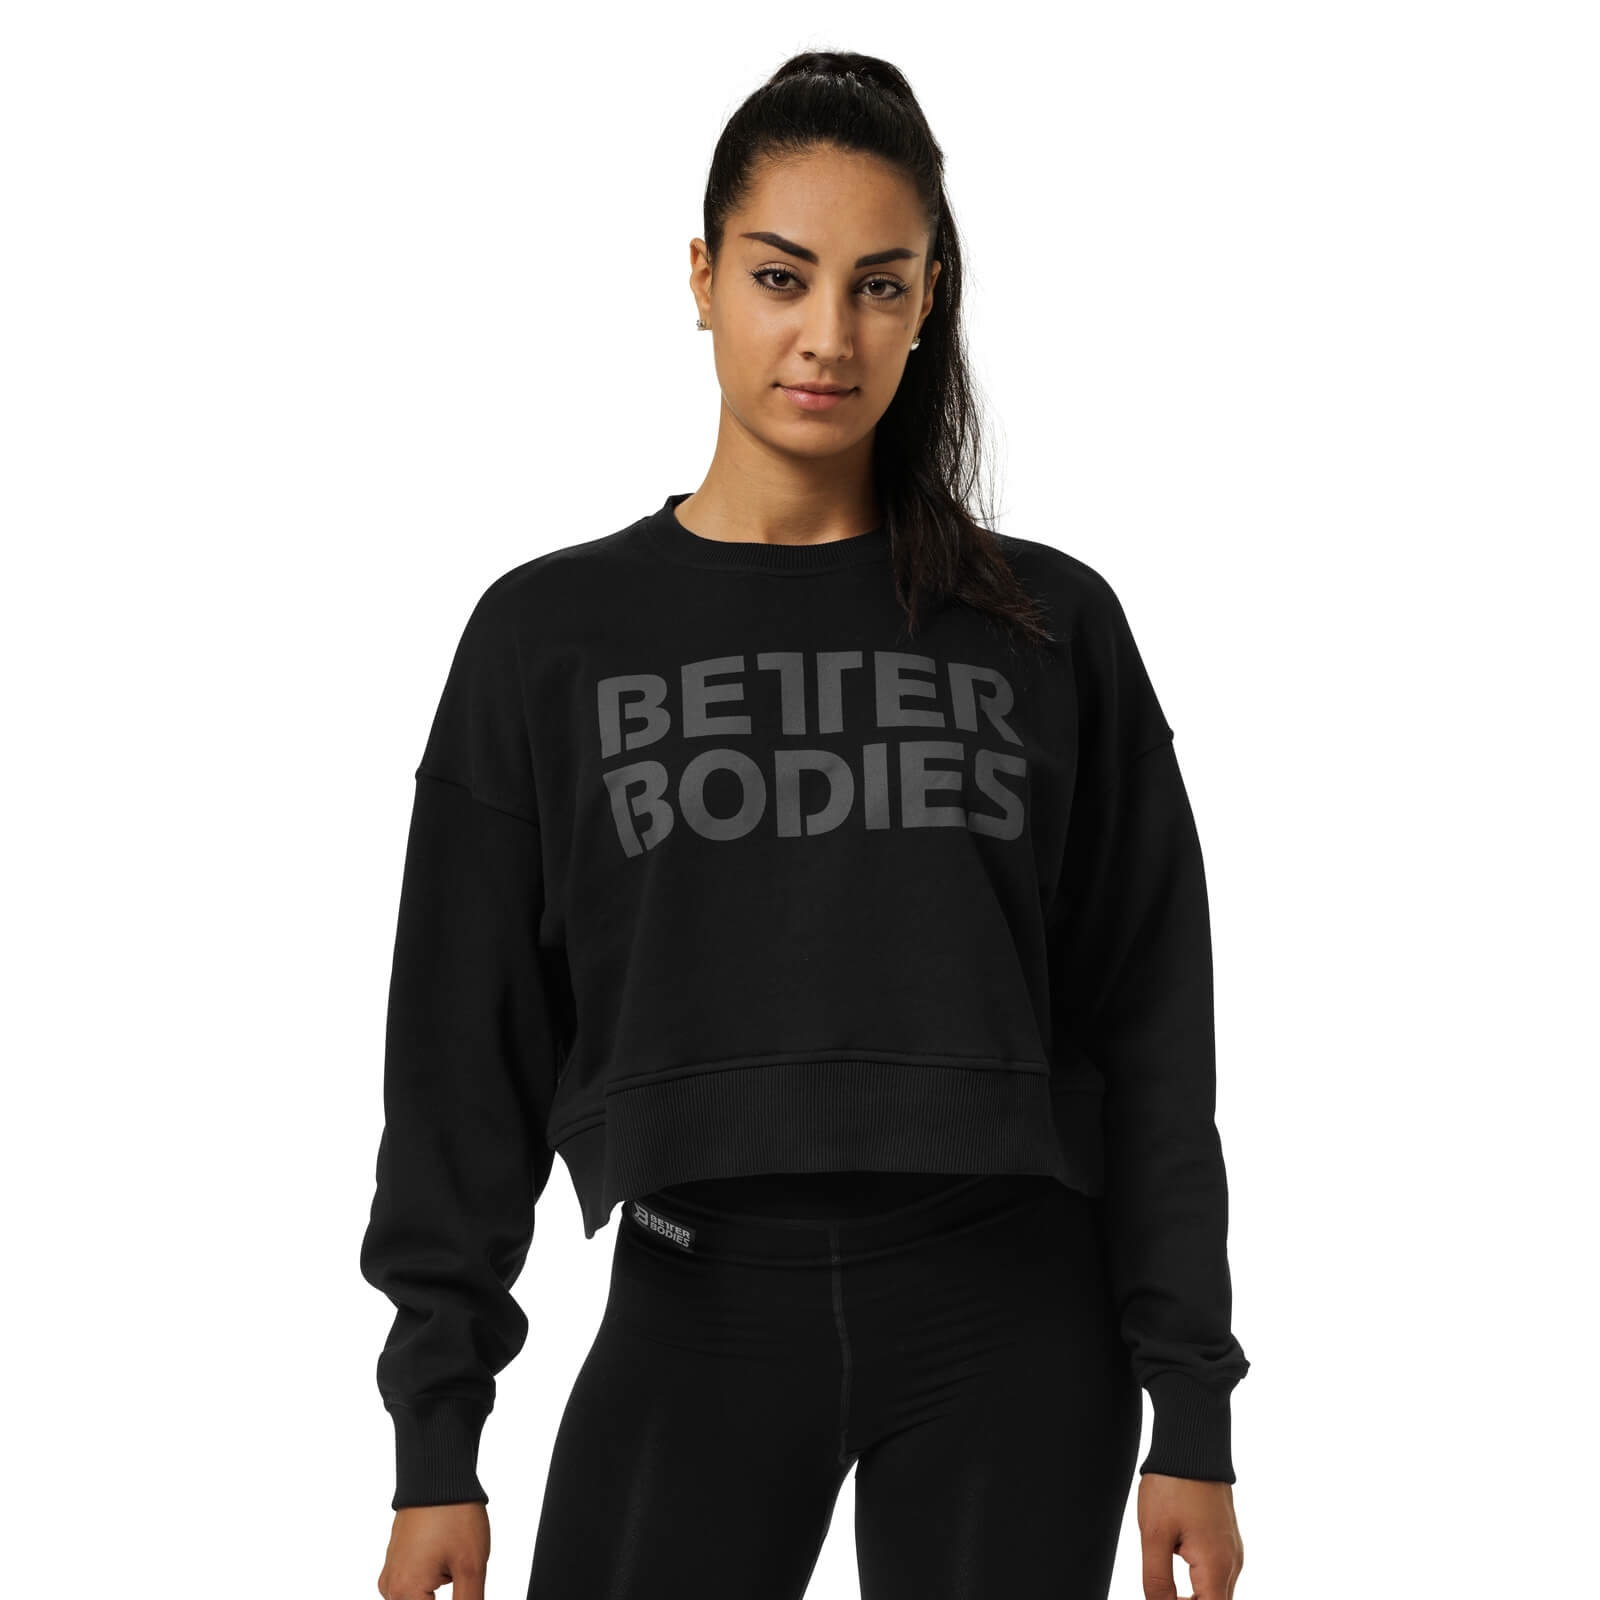 Sjekke Chelsea Sweater, black, Better Bodies hos SportGymButikken.no